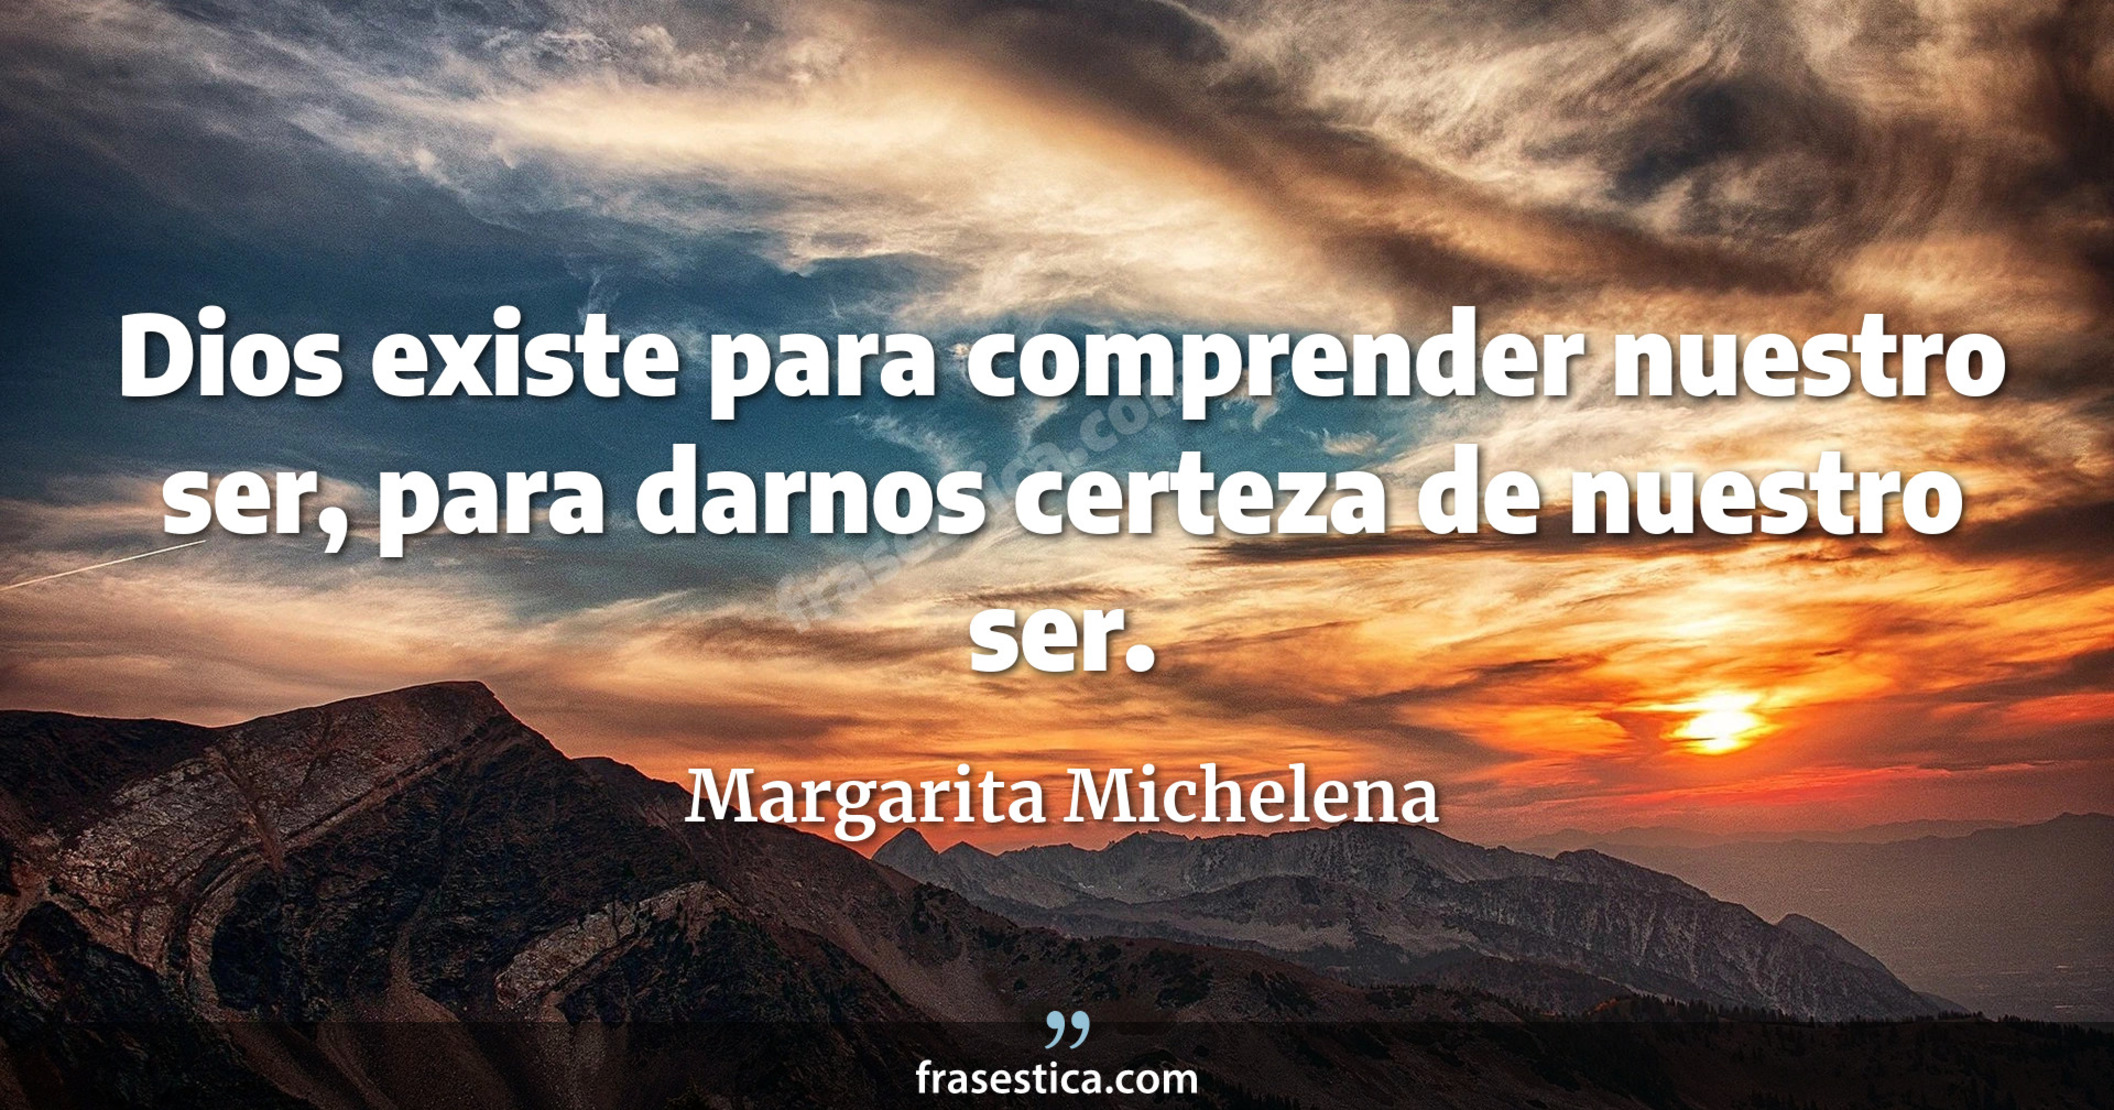 Dios existe para comprender nuestro ser, para darnos certeza de nuestro ser. - Margarita Michelena